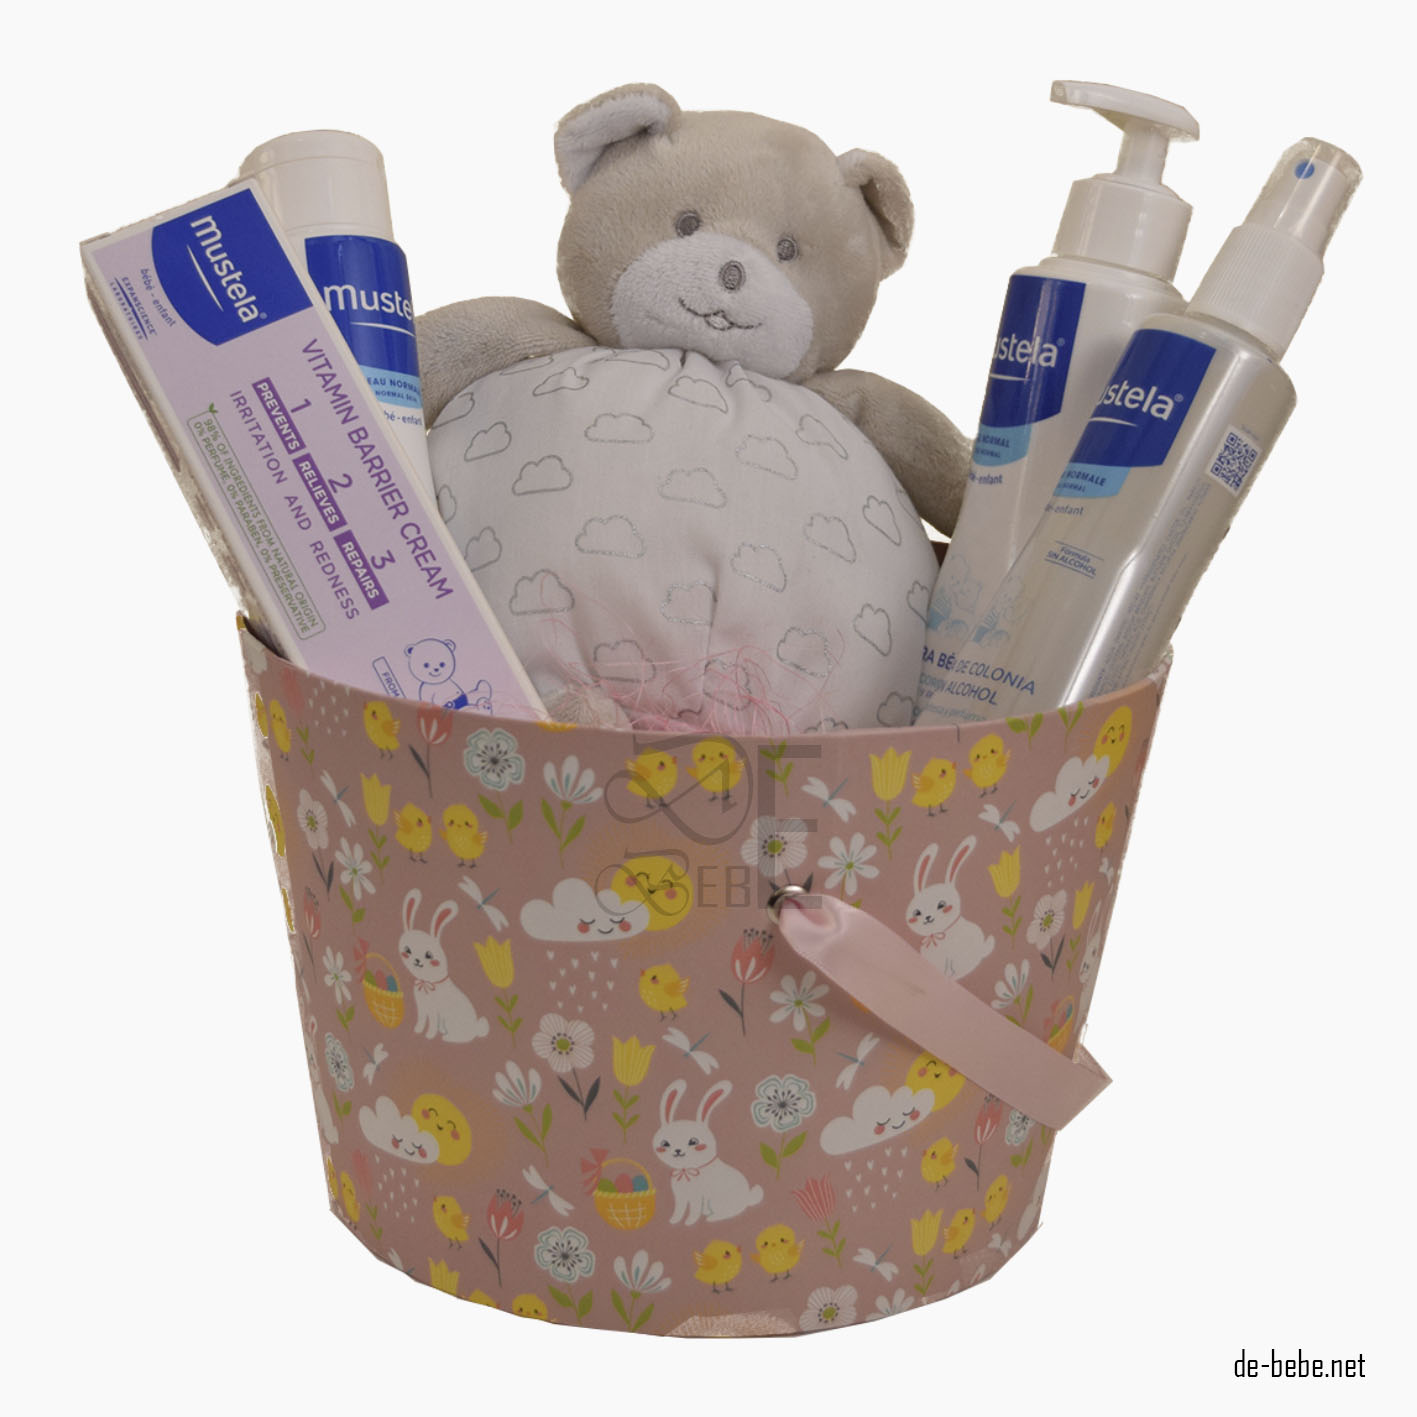 Canastillas y cestas de bebé para regalar - Mustela